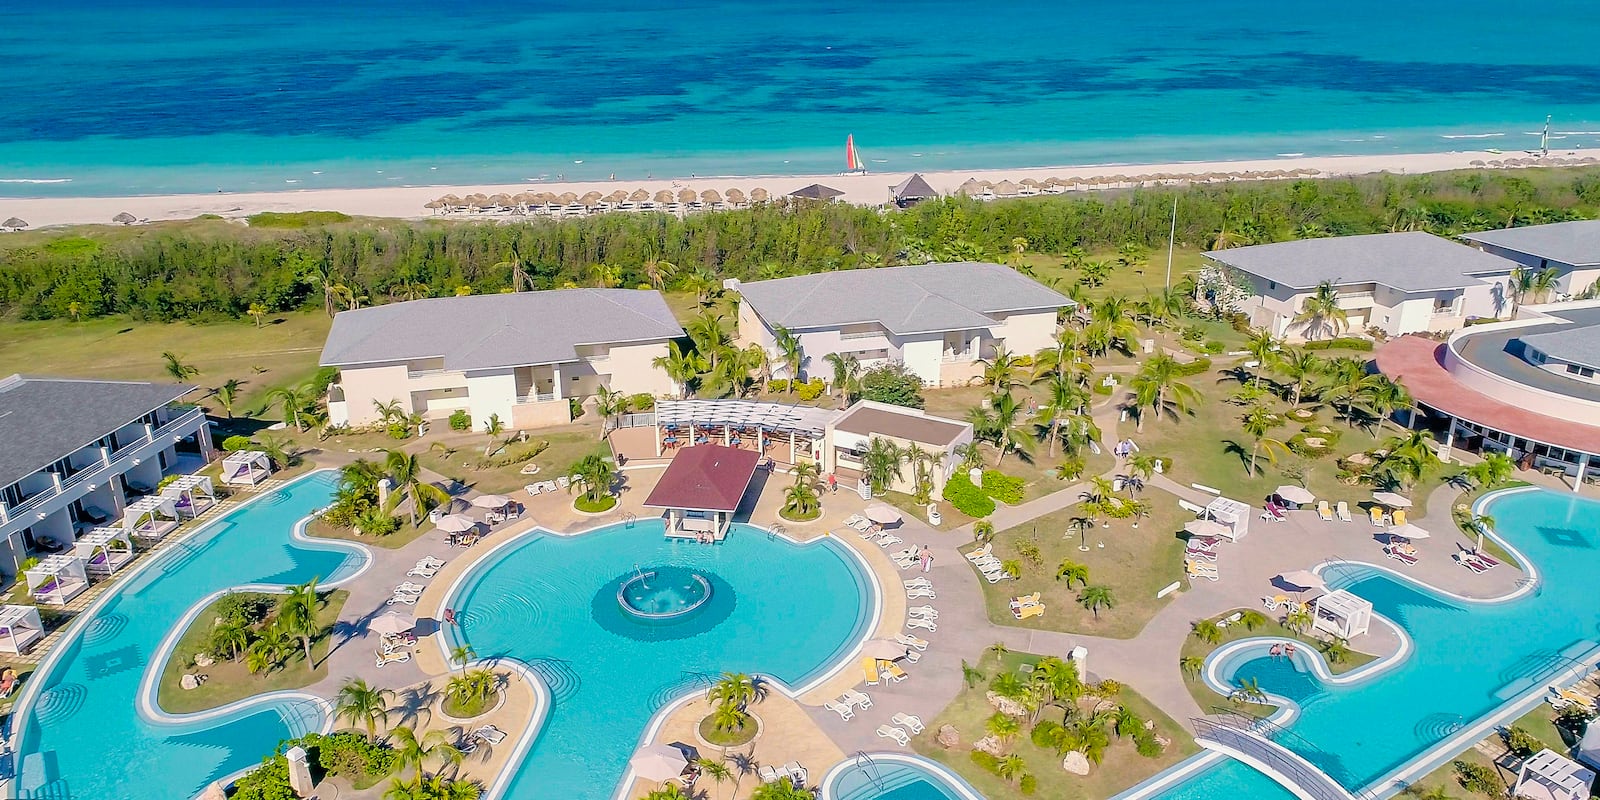 Hotel Meliá Paradisus Princesa del Mar - Varadero - Cuba - Foro Caribe: Cuba, Jamaica